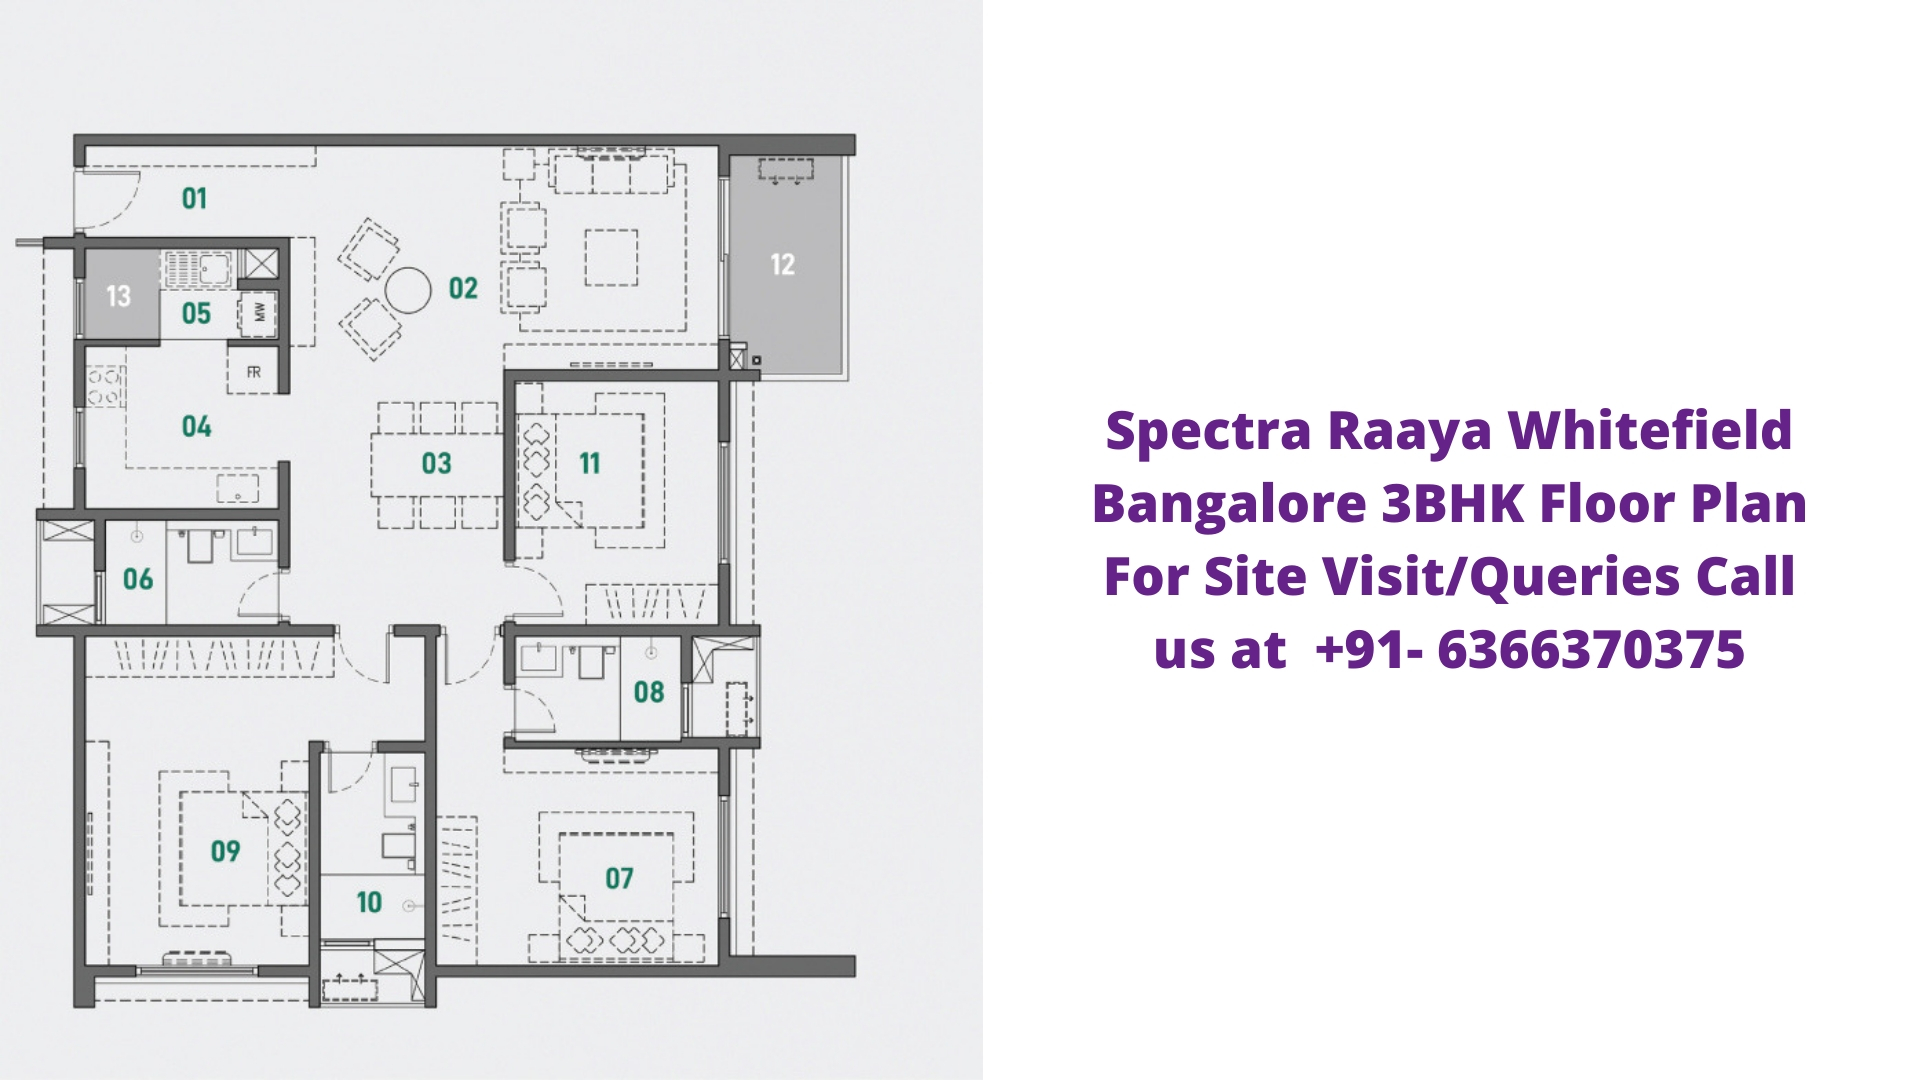 Spectra Raaya Whitefield Bangalore 3bhk floor plan